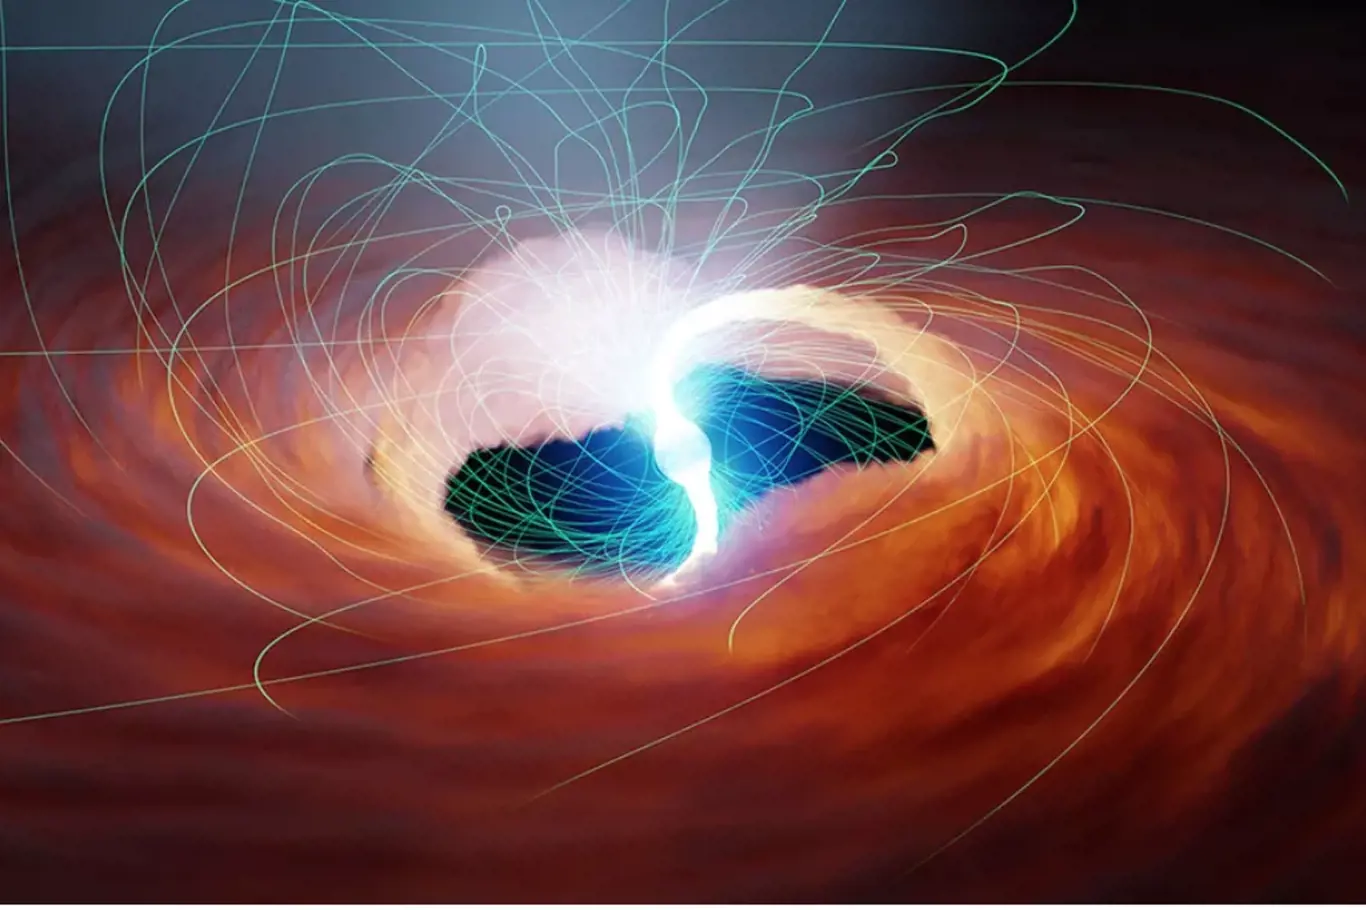 Ilustrace neutronové hvězdy - ultrazářivého zdroje rentgenového záření -, která se otáčí, zatímco úponky magnetického pole bičují prostor.